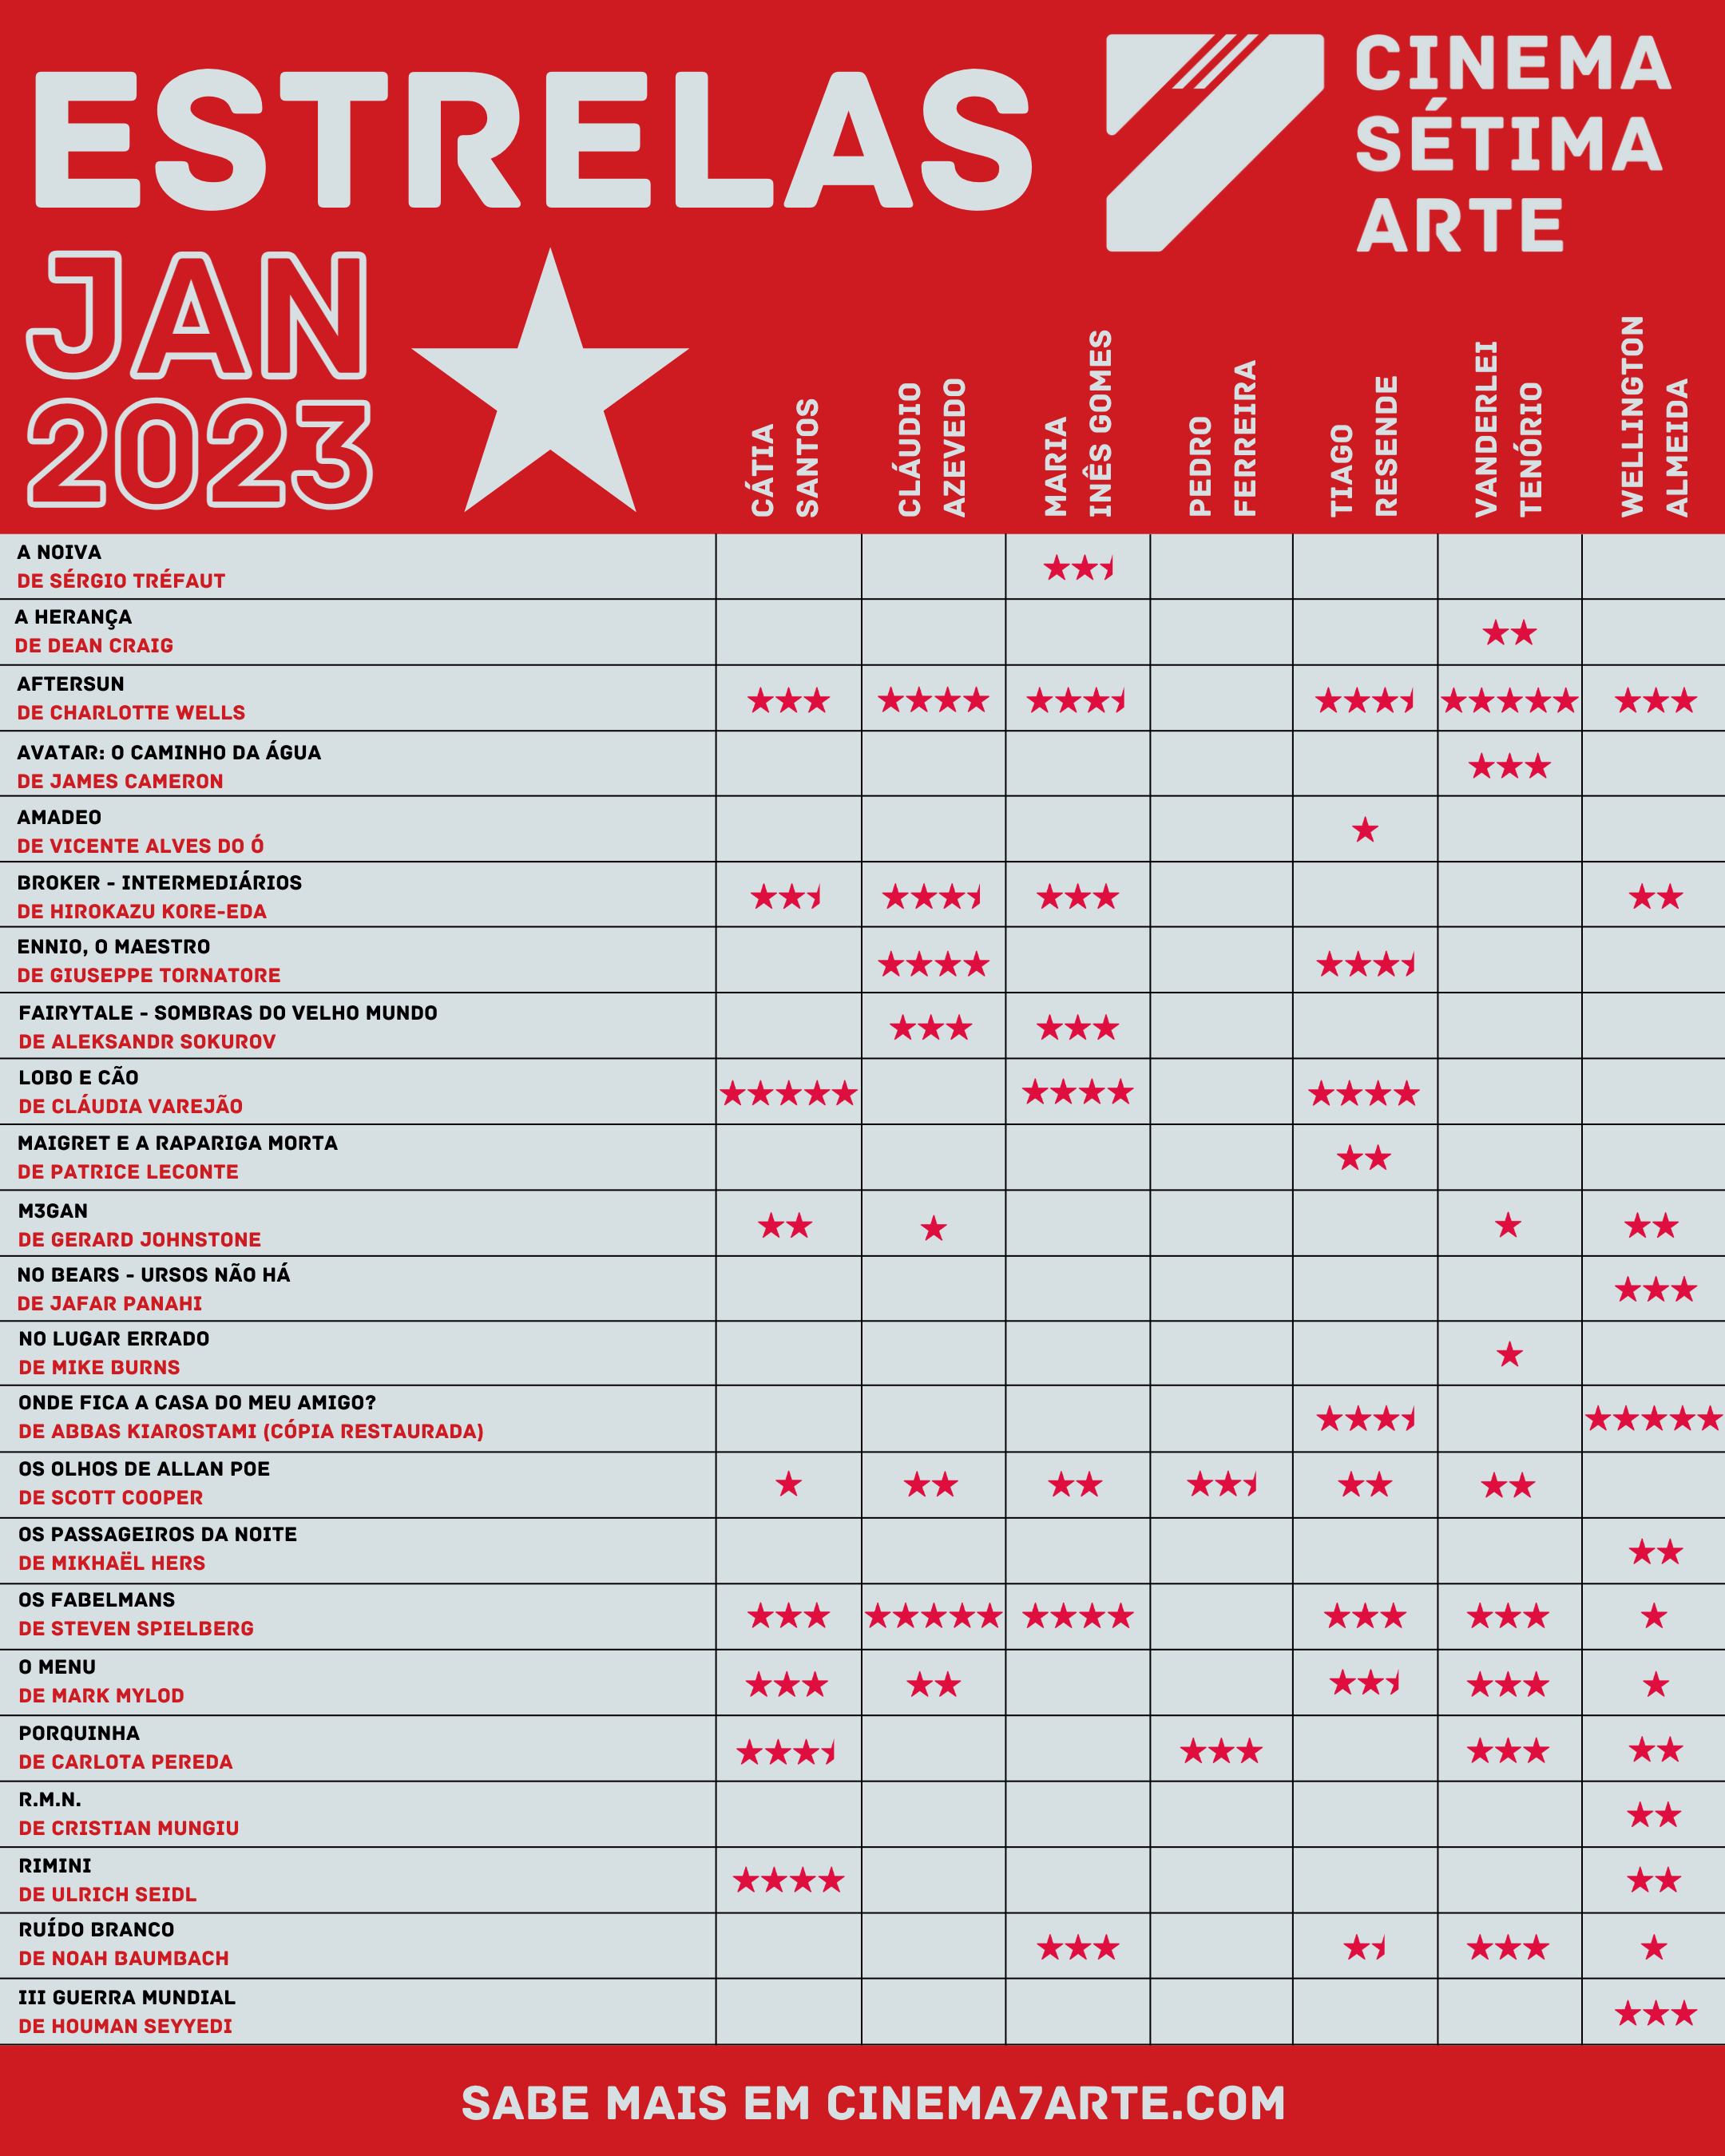 estrelas-cinema-setima-arte-janeiro-2023-2